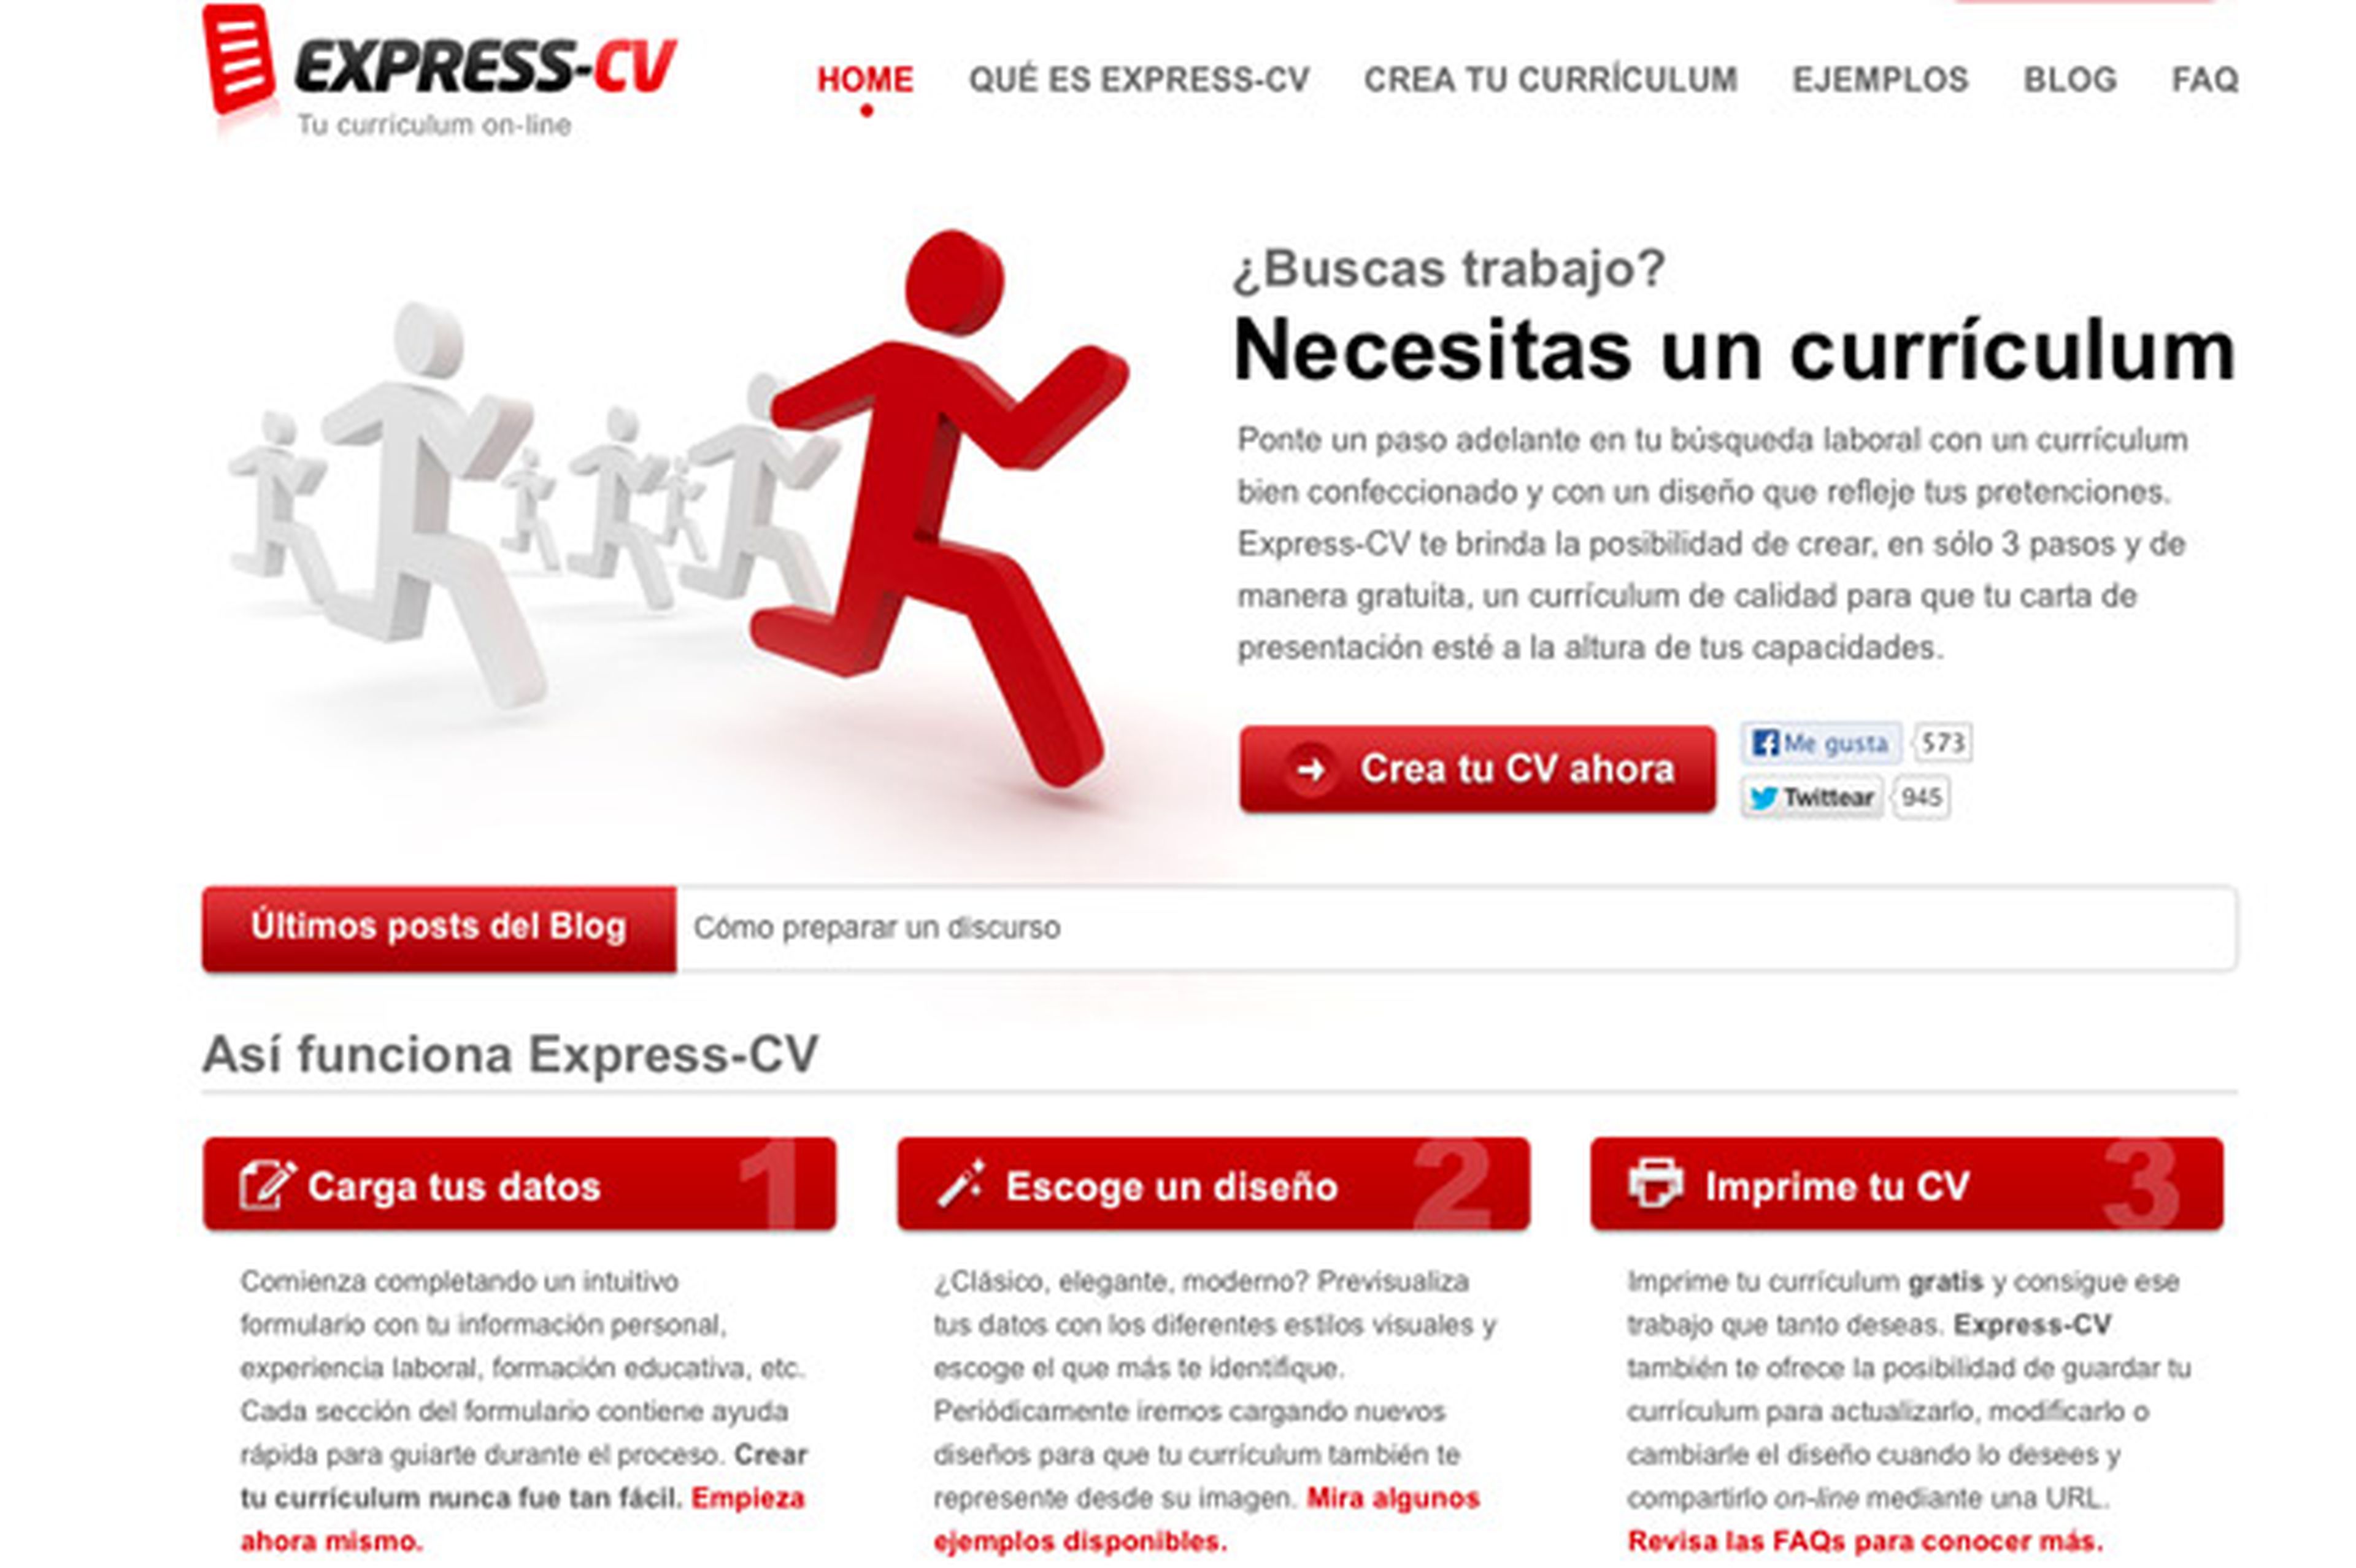 Express-CV